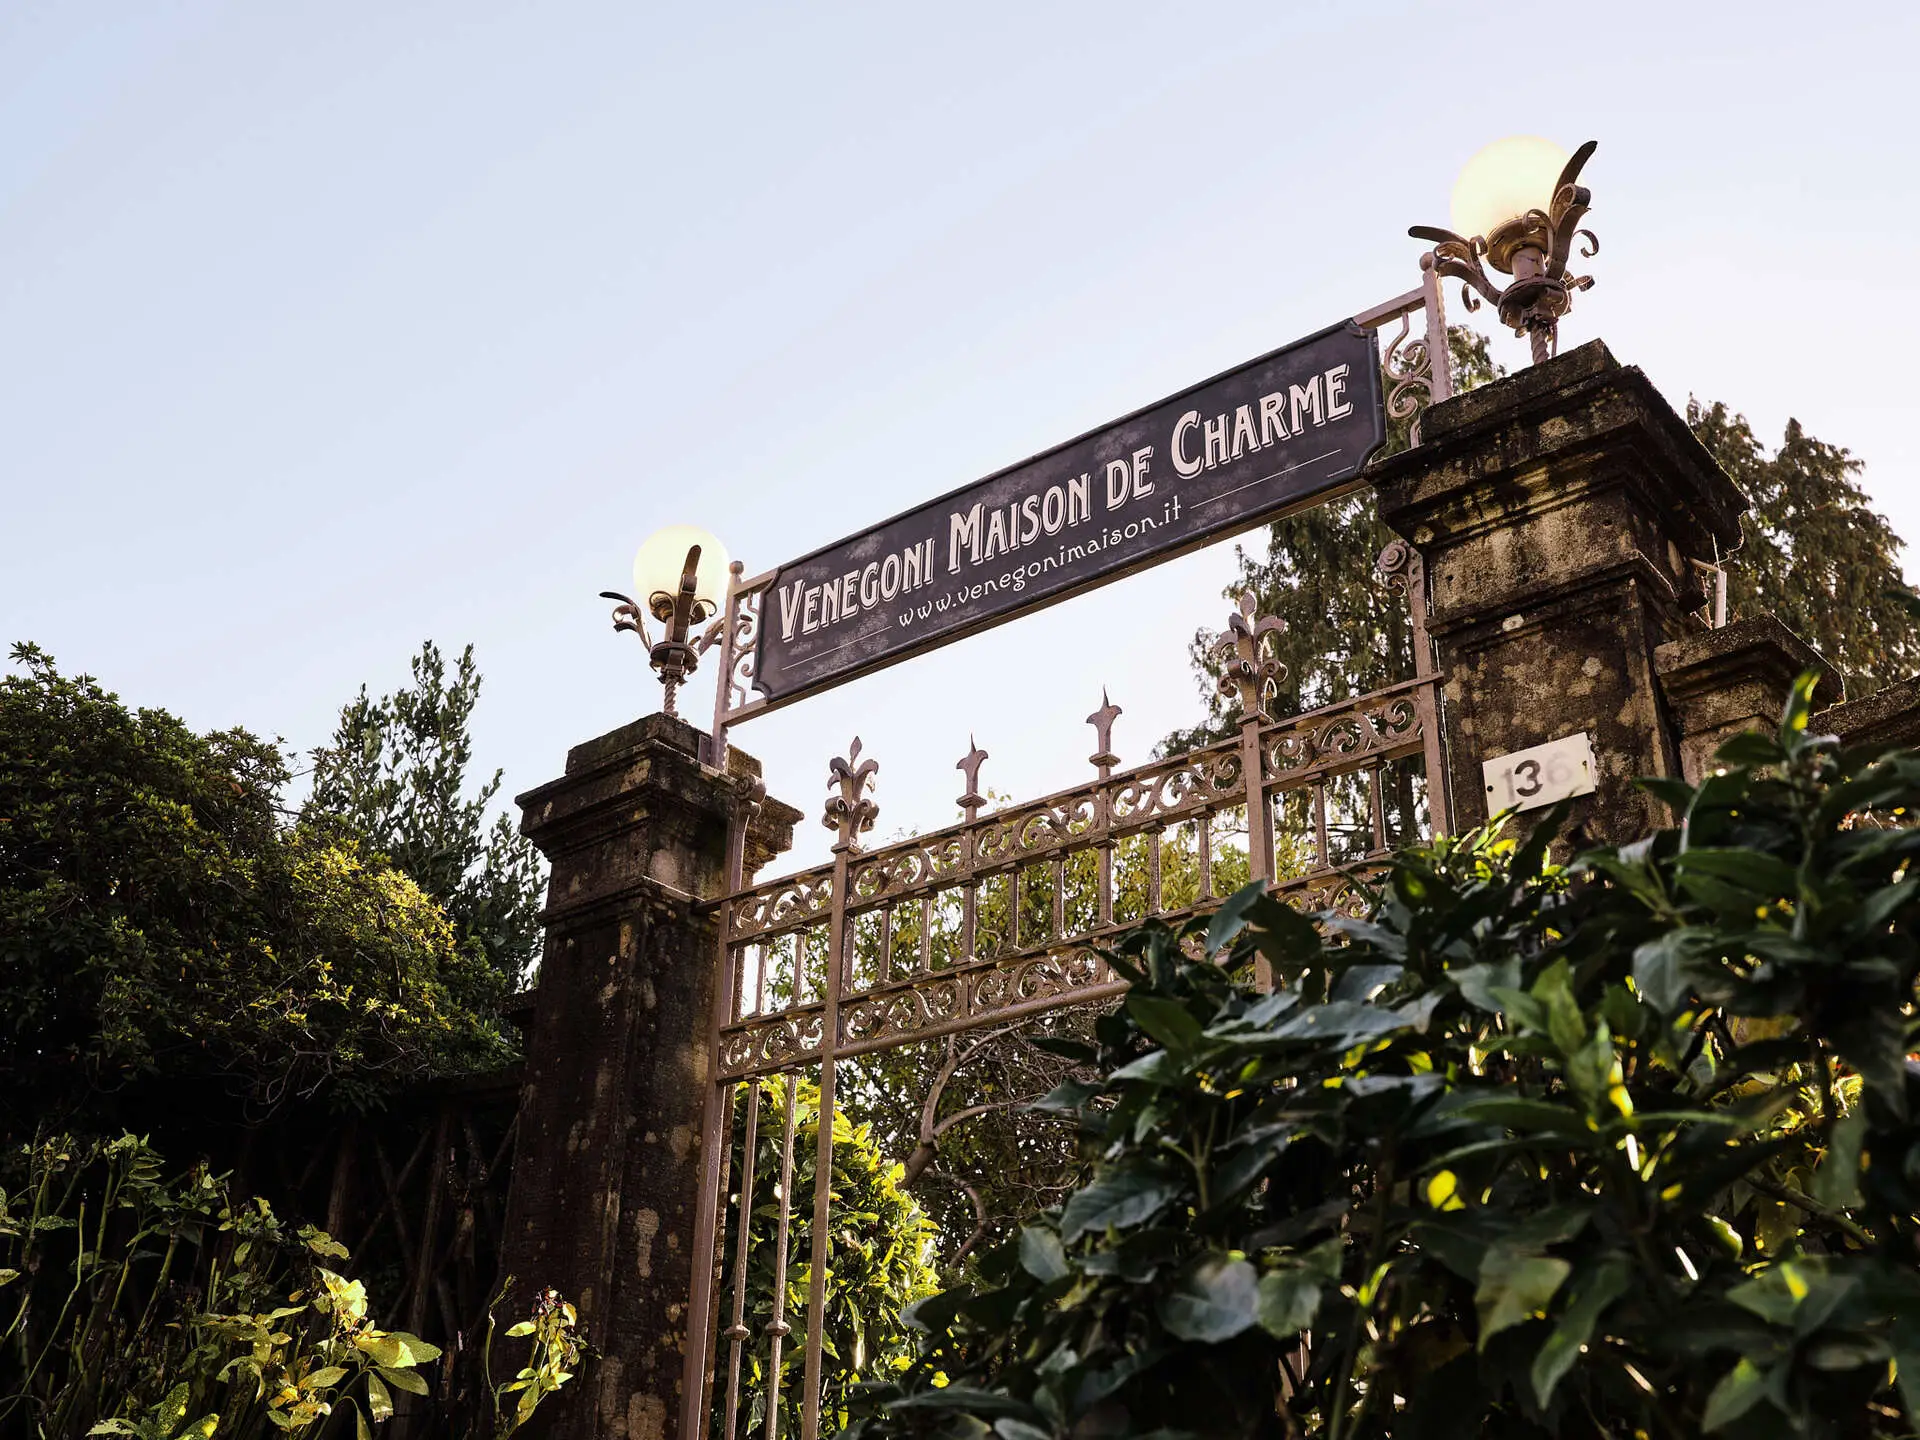 Venegoni Maison de charme sul Lago Maggiore, struttura immersa nel suo parco secolare. Adatta per soggiorni romantici e in famiglia.